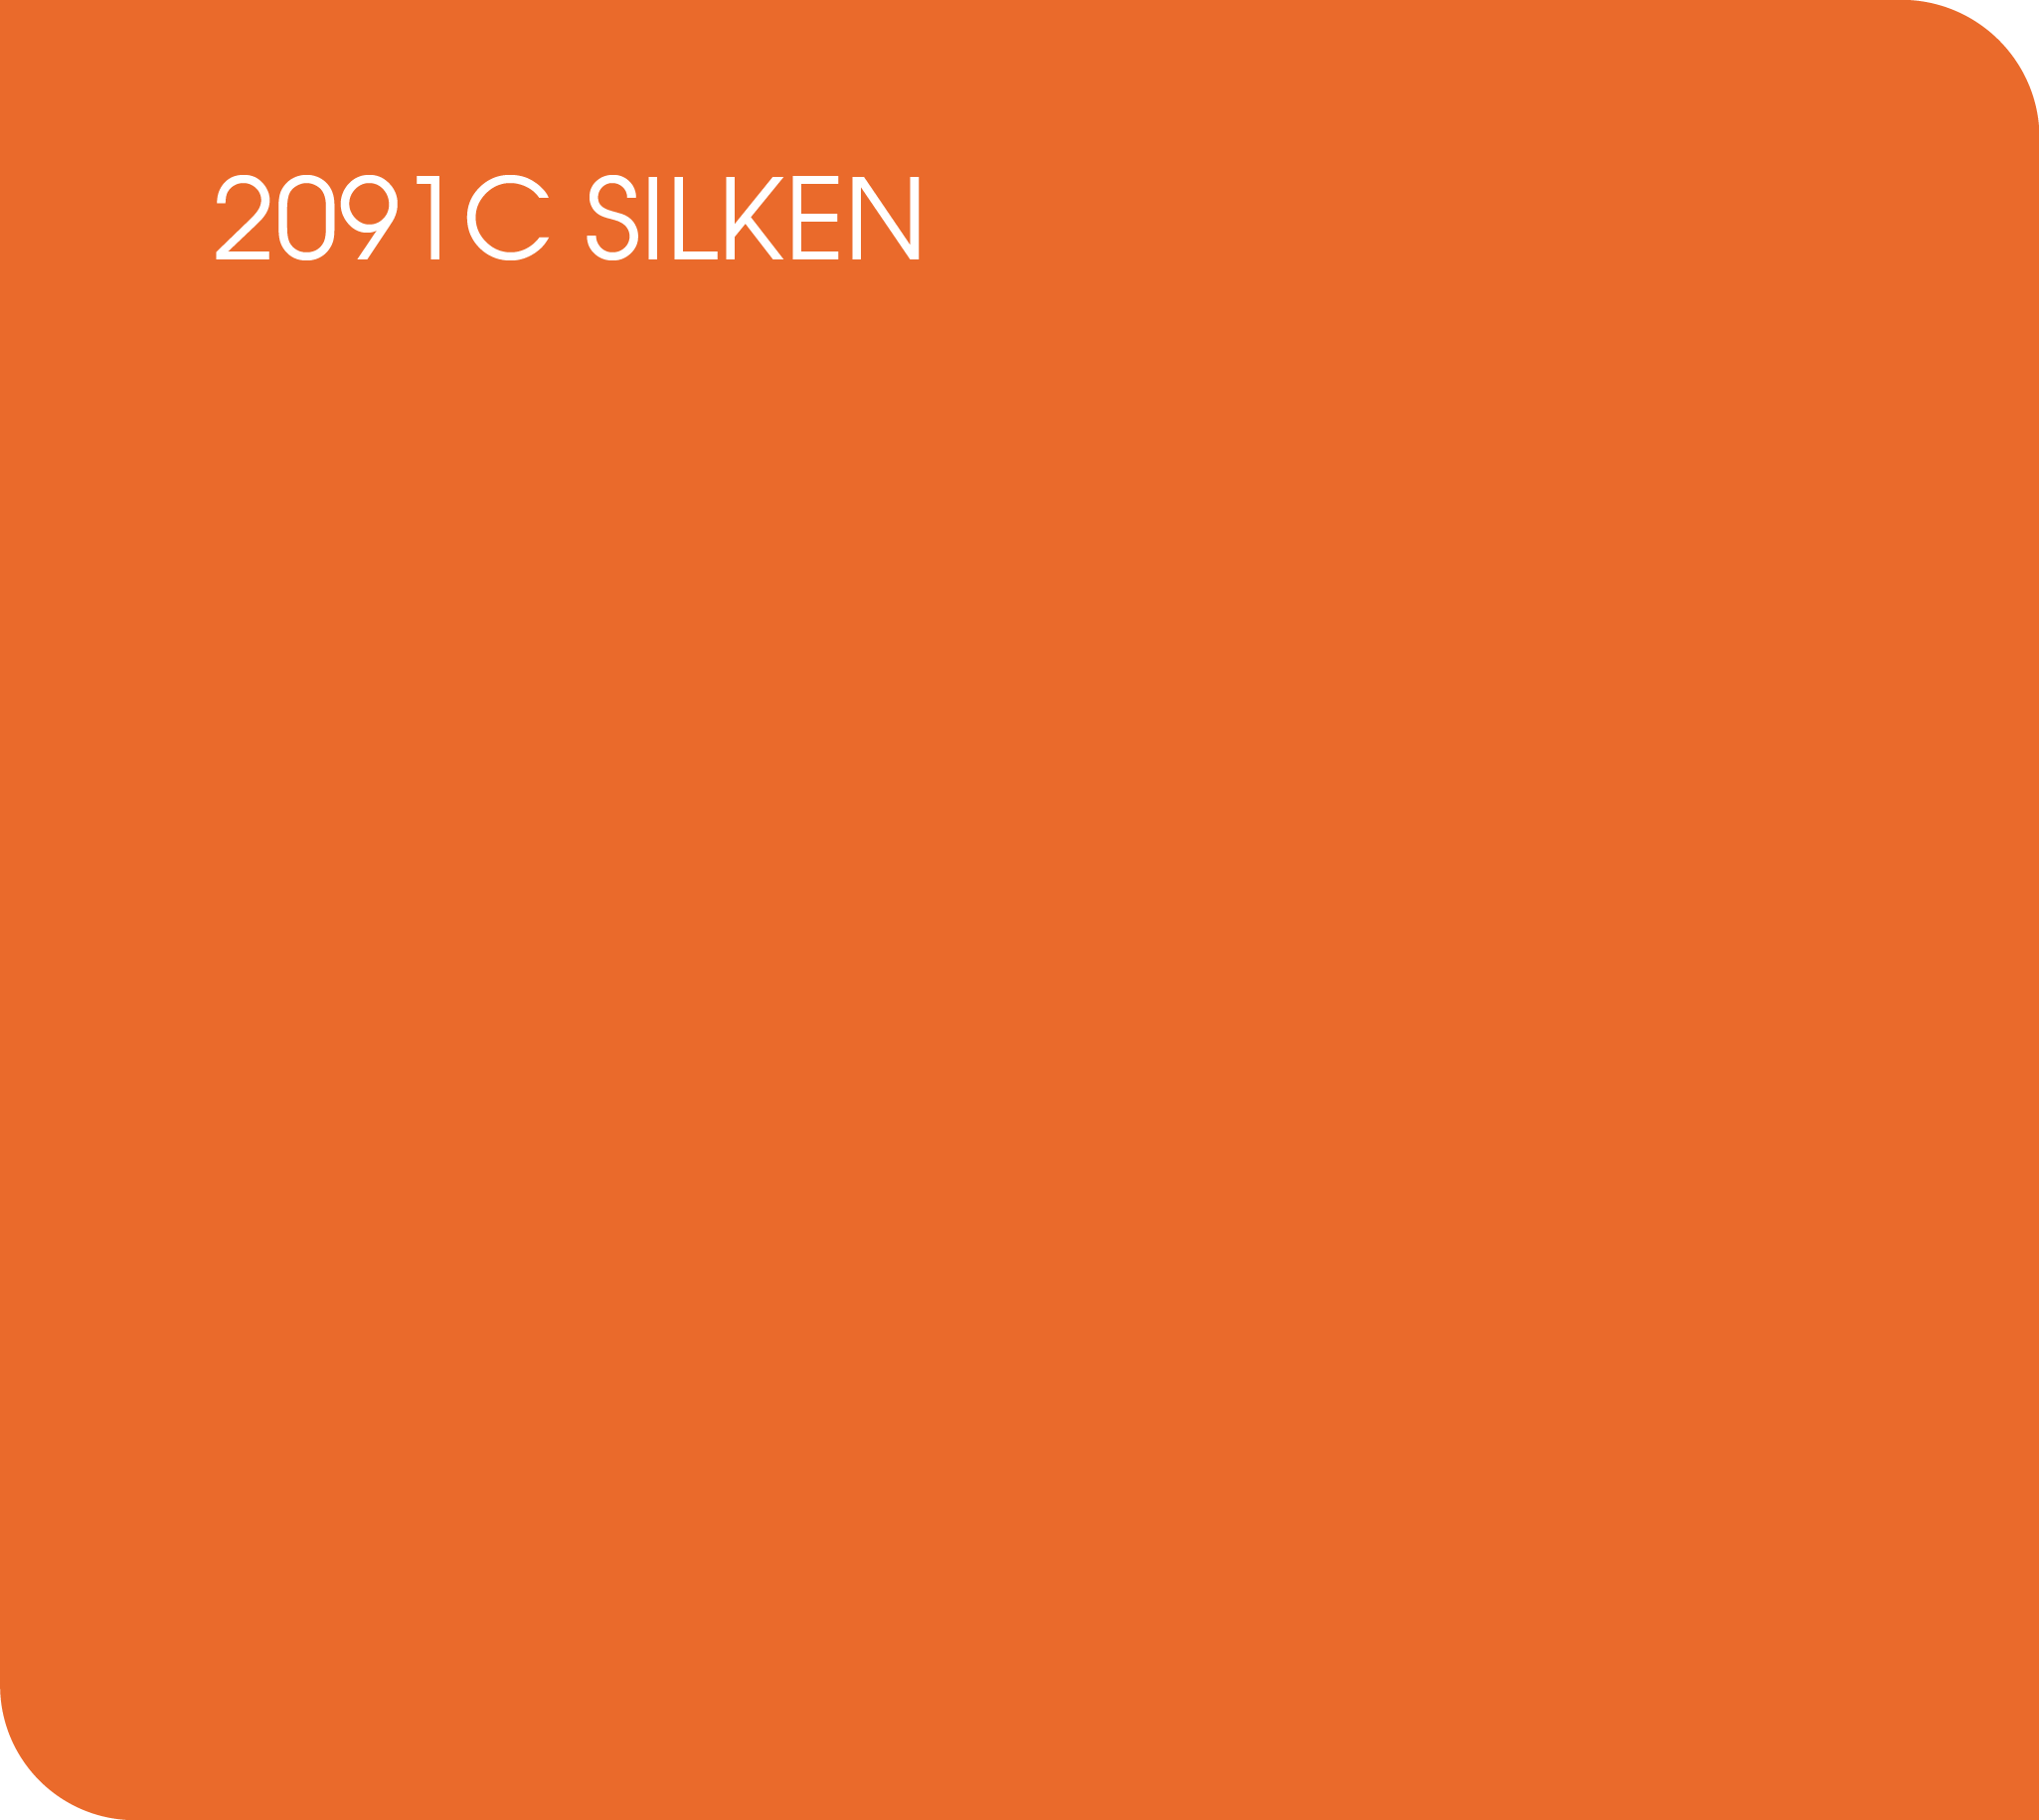 silken 2091C